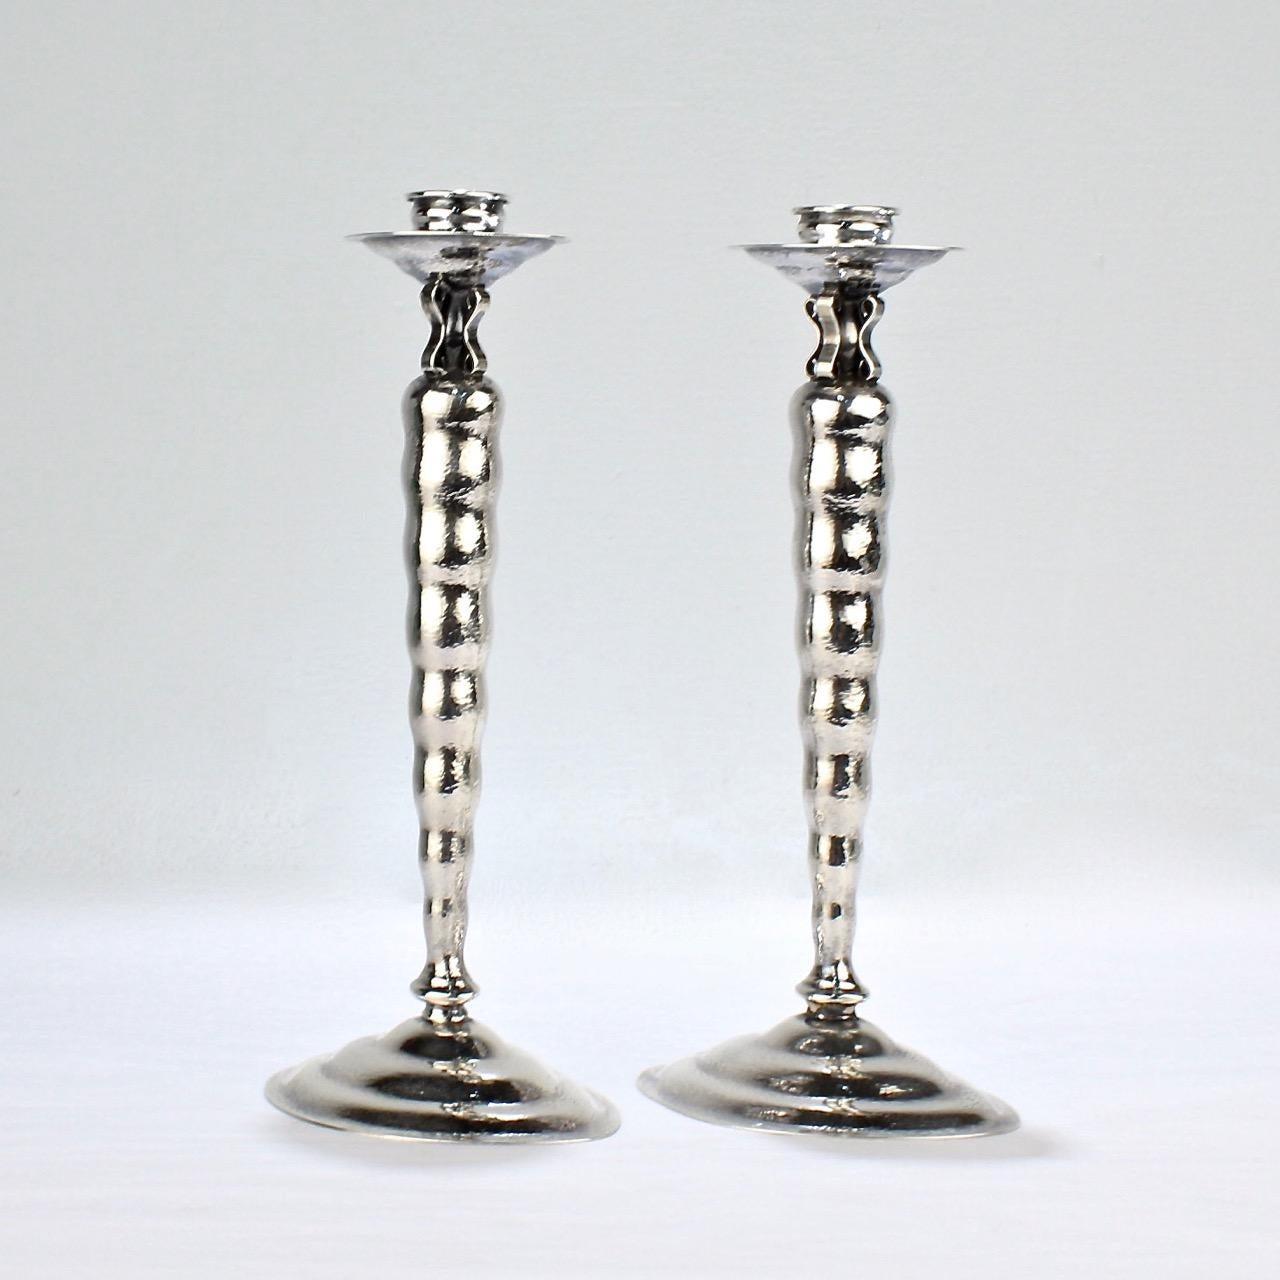 Ein wunderbares Paar Reed & Barton-Kerzenhalter.

Im Modernist-Muster mit handgehämmerter Oberfläche.

Dieses Paar amerikanischer Deko-Kerzenständer besteht aus Kerzenschalen und Bobeches, die auf einem konischen, wellenförmigen Schaft und Sockel